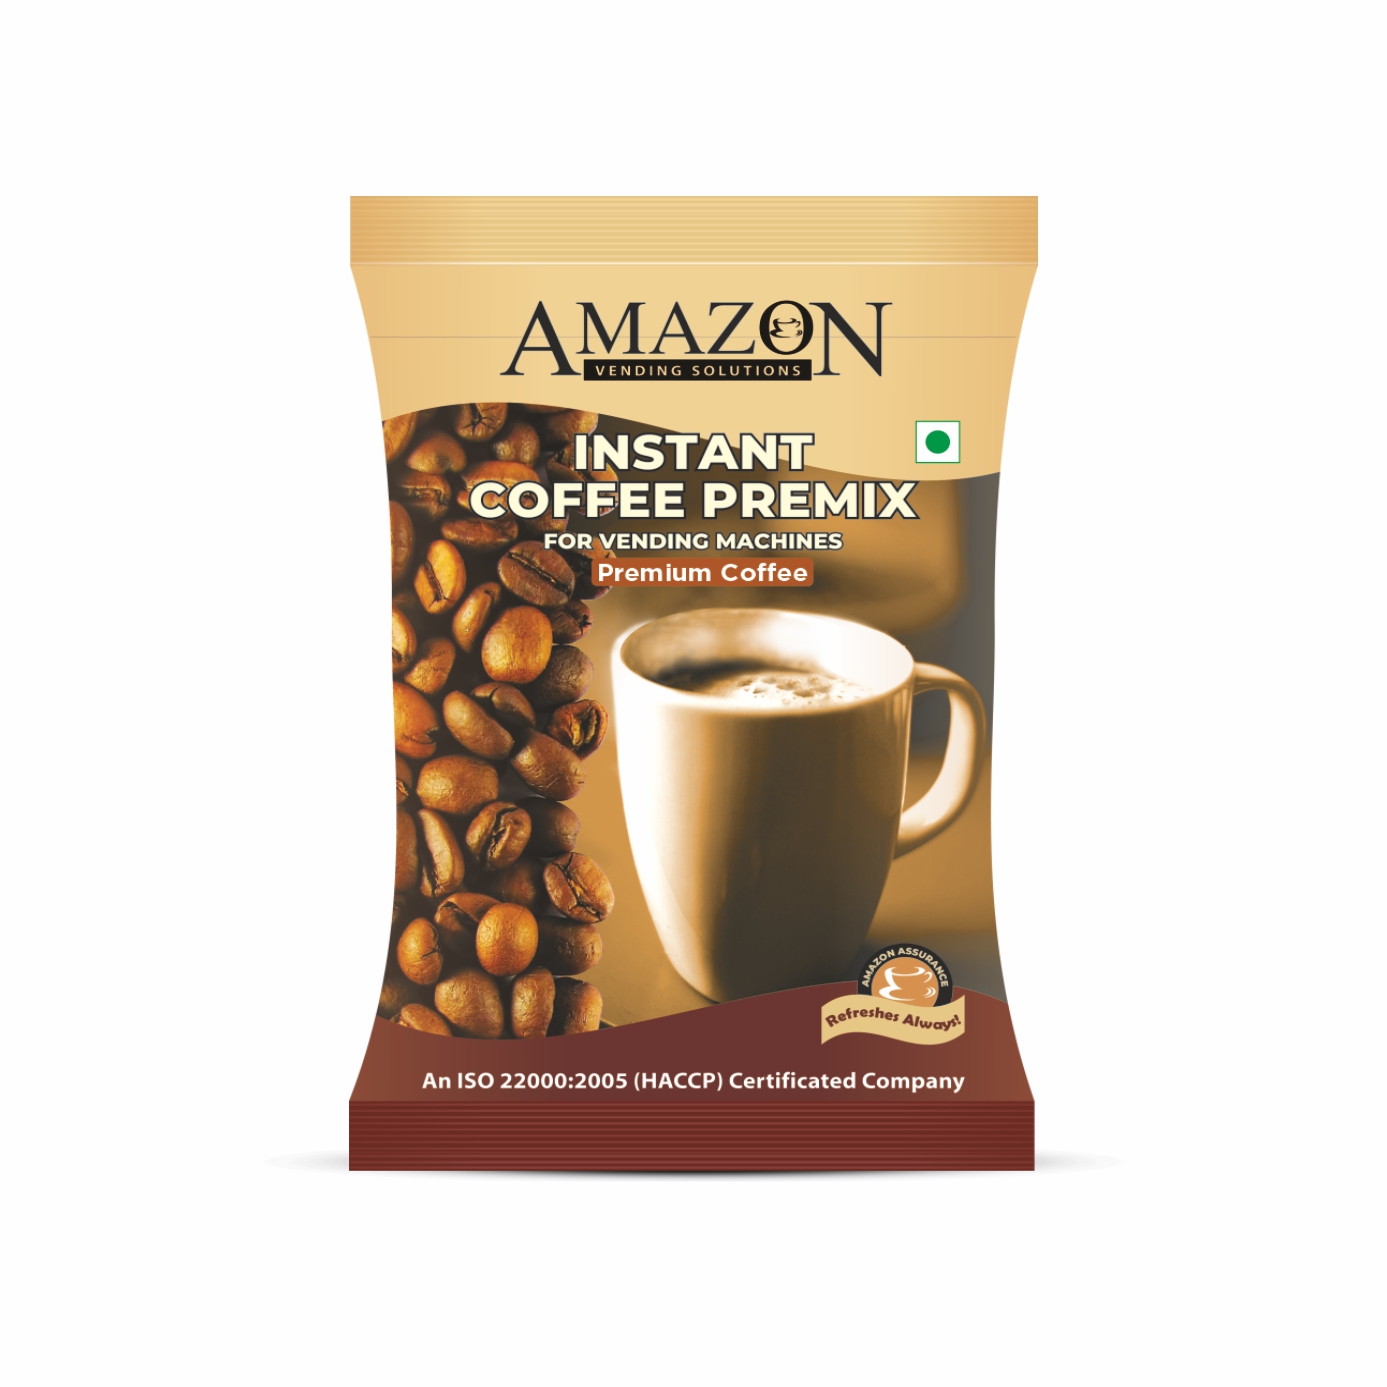 Amazon 3 in 1 Premium Instant Coffee Premix